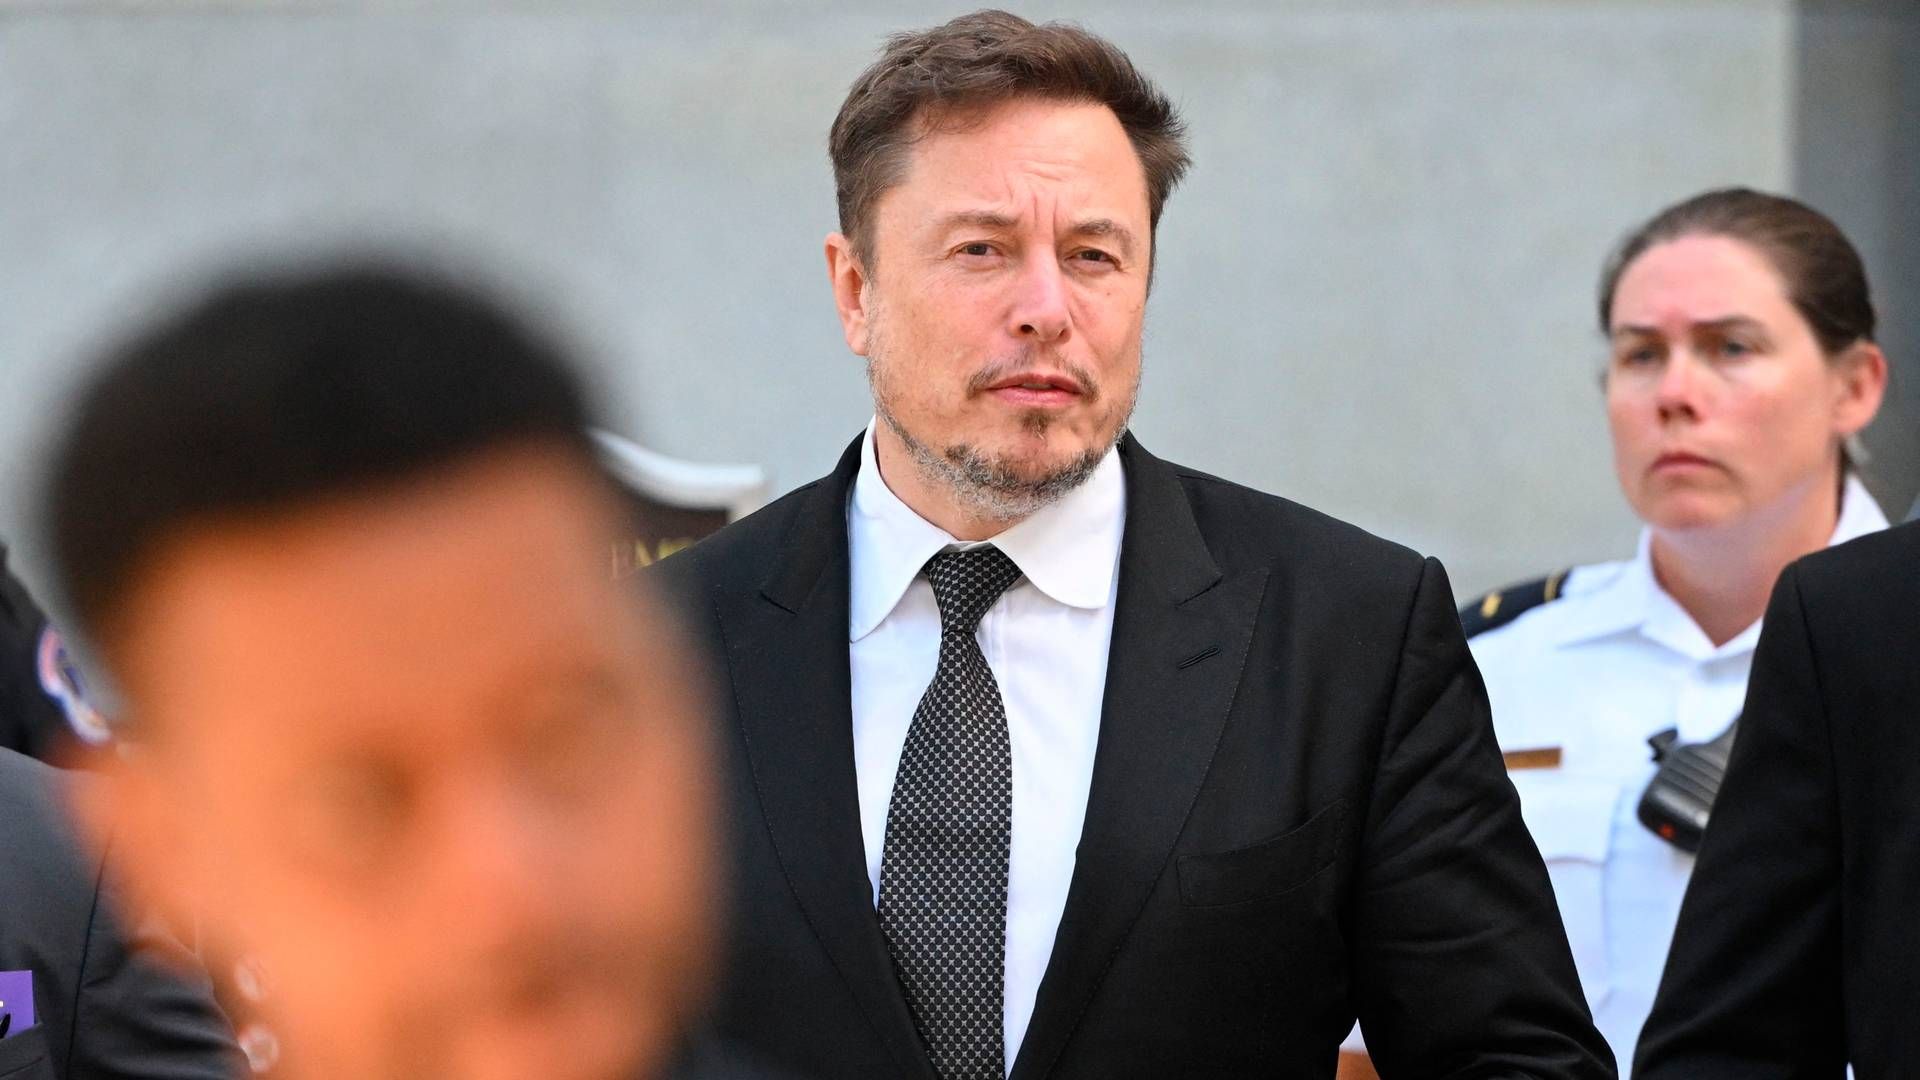 Efter at have købt det sociale medie Twitter har Elon Musk omdøbt det til X. I en rapport fra EU-Kommissionen får X kritik for sin håndtering af misinformation. | Foto: Mandel Ngan